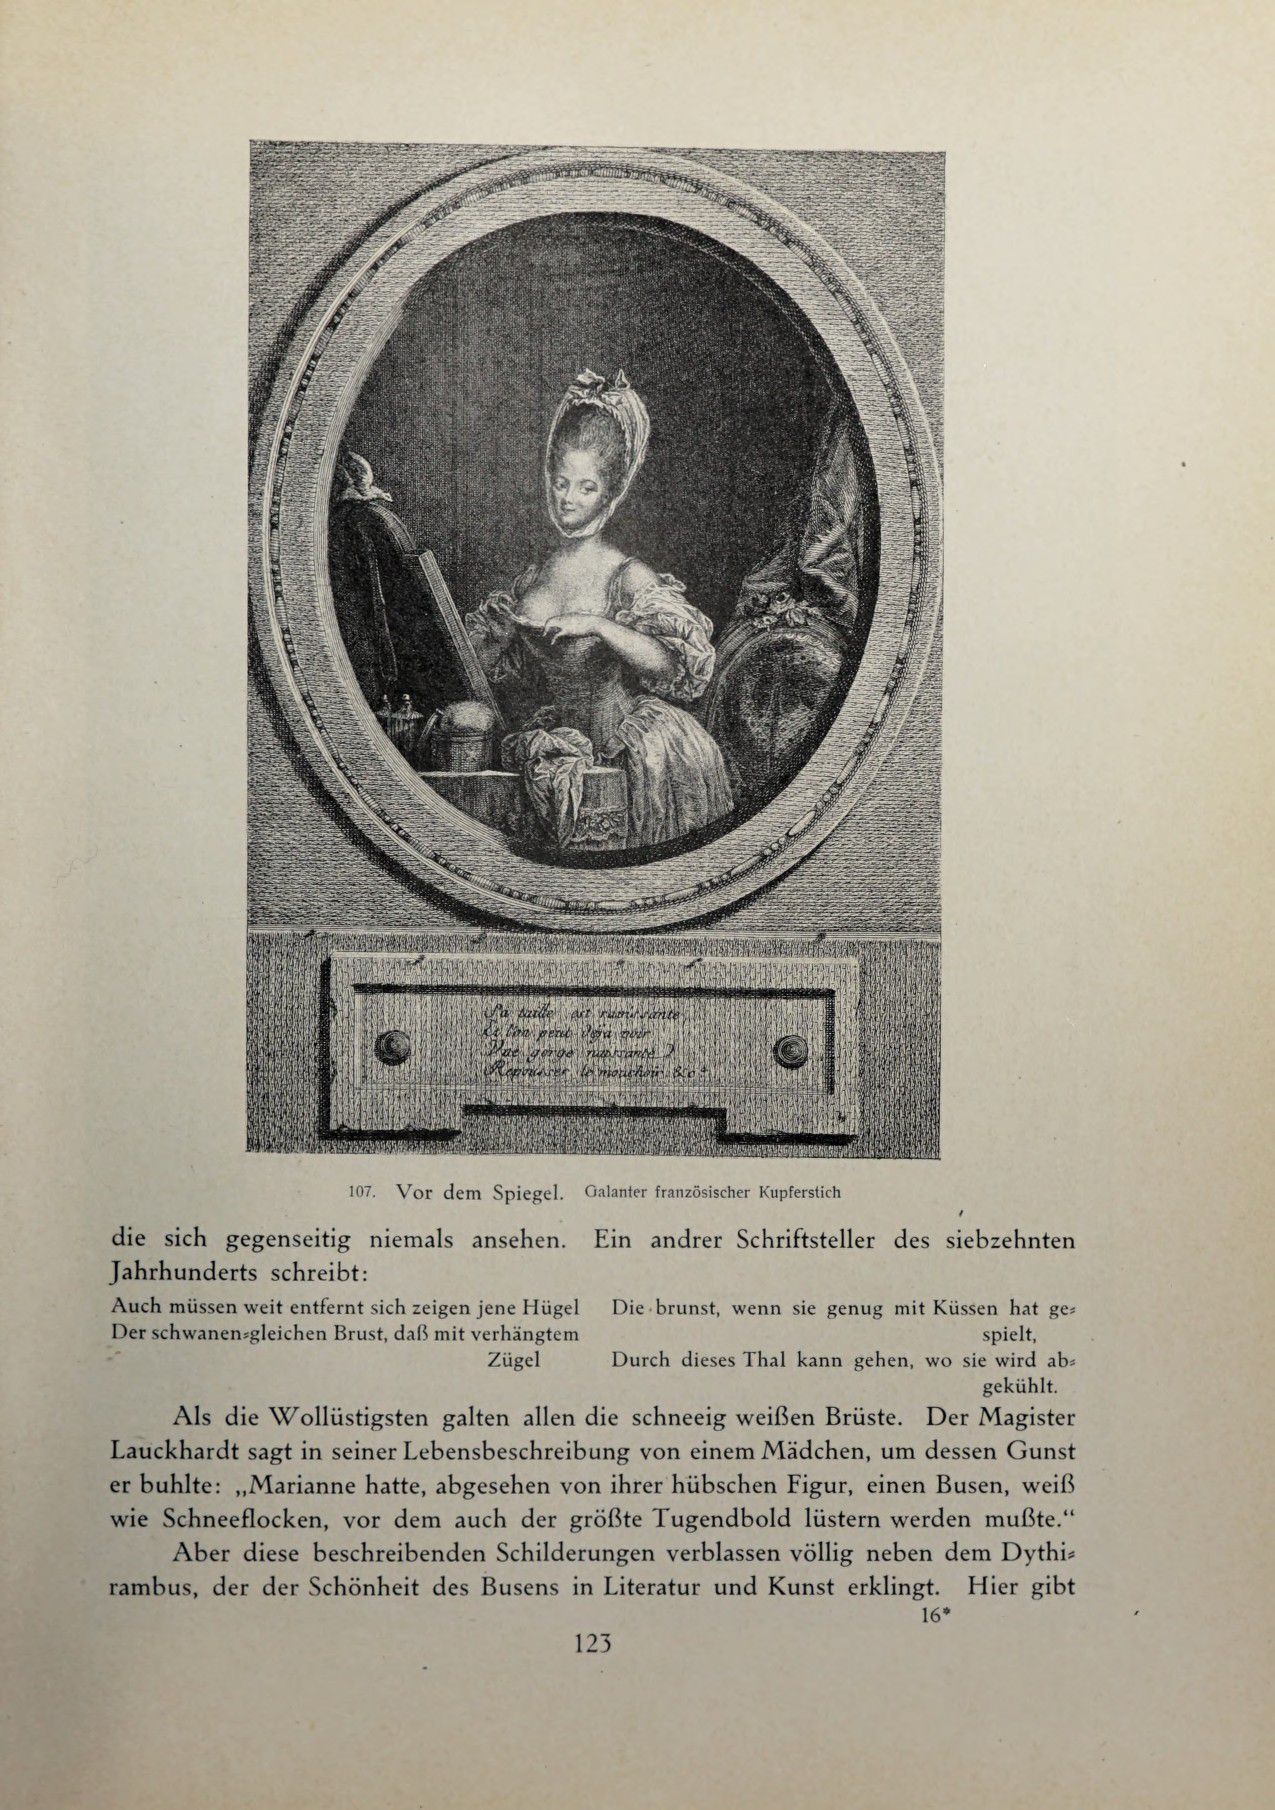 [Eduard Fuchs] Illustrierte Sittengeschichte vom Mittelalter bis zur Gegenwart: Bd. 2. and Ergänzungsband. Die galante Zeit [German] 188